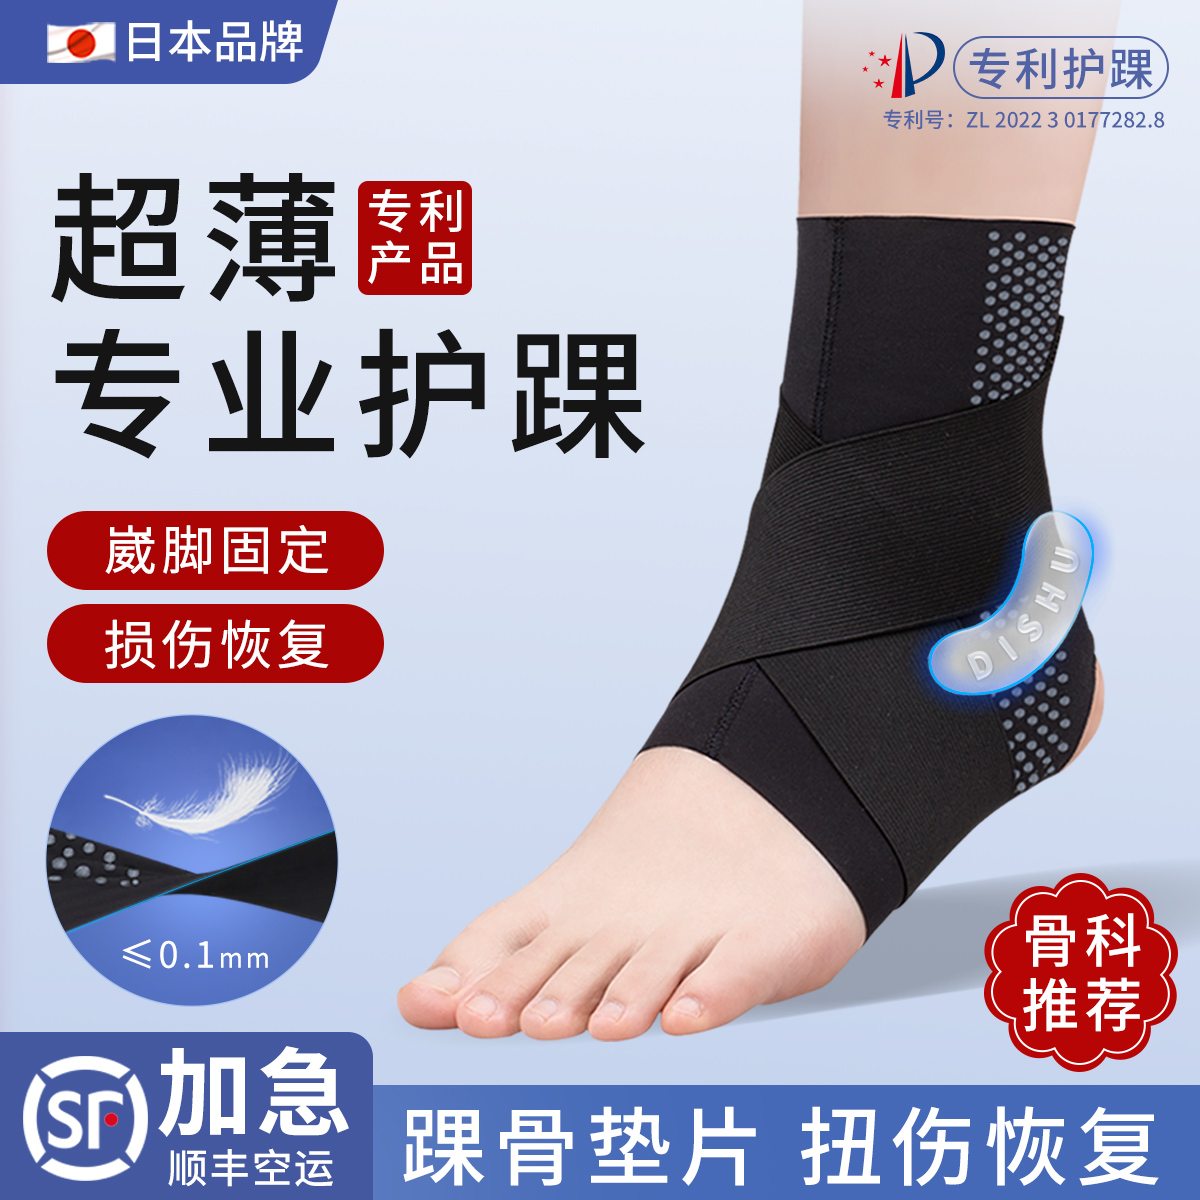 日本护踝防崴脚踝保护套专业扭伤恢复固定康复踝关节护具男女运动